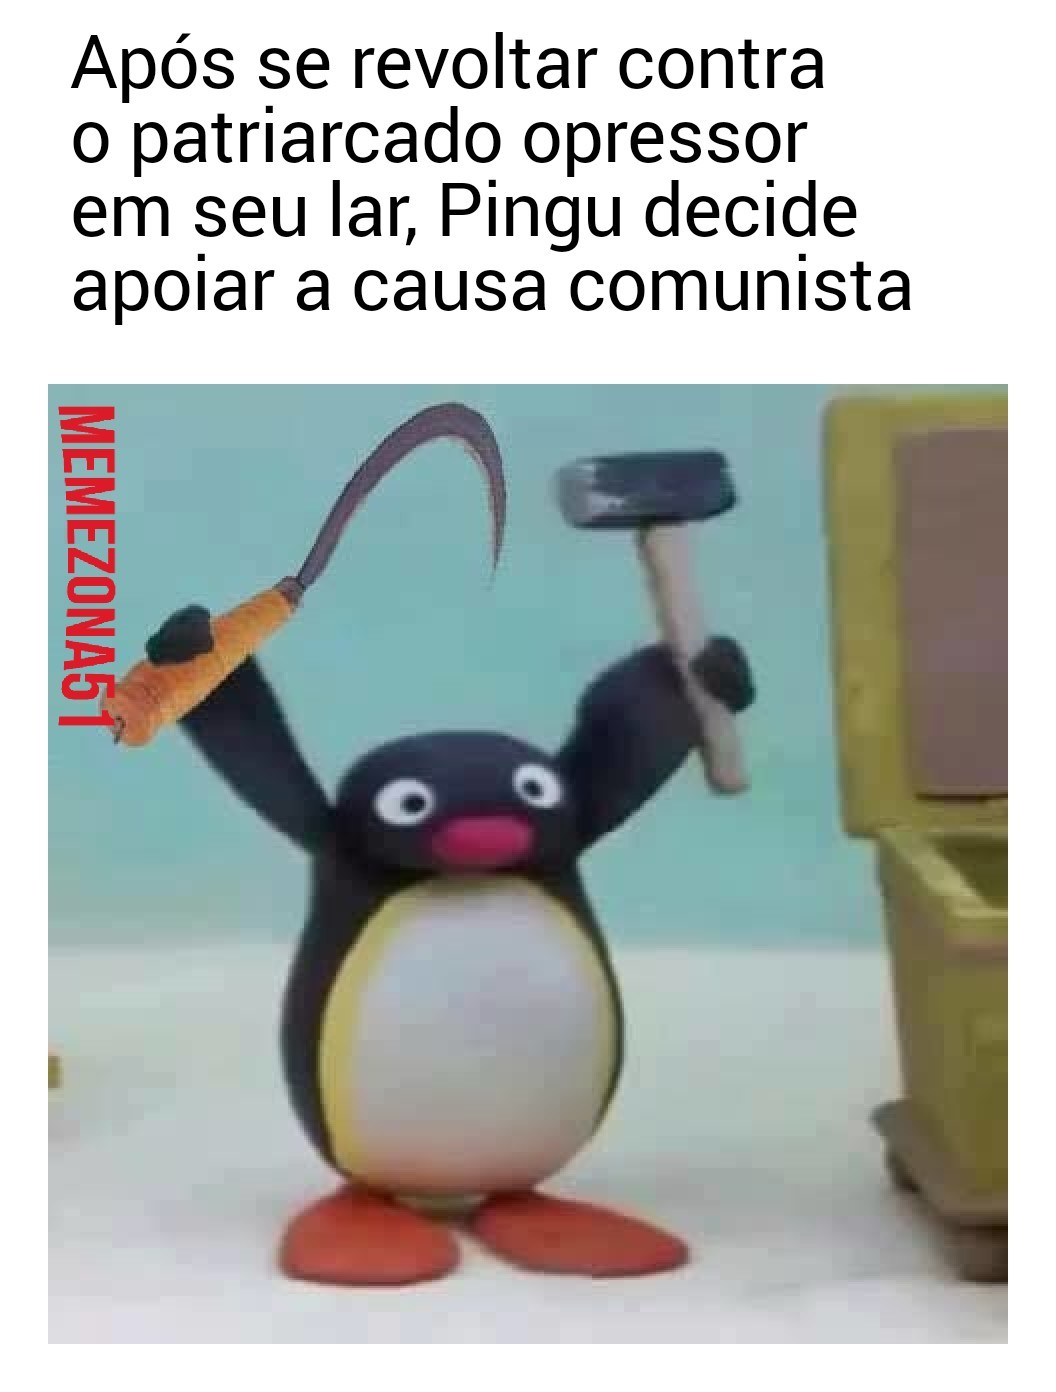 Pingu vermelho - meme